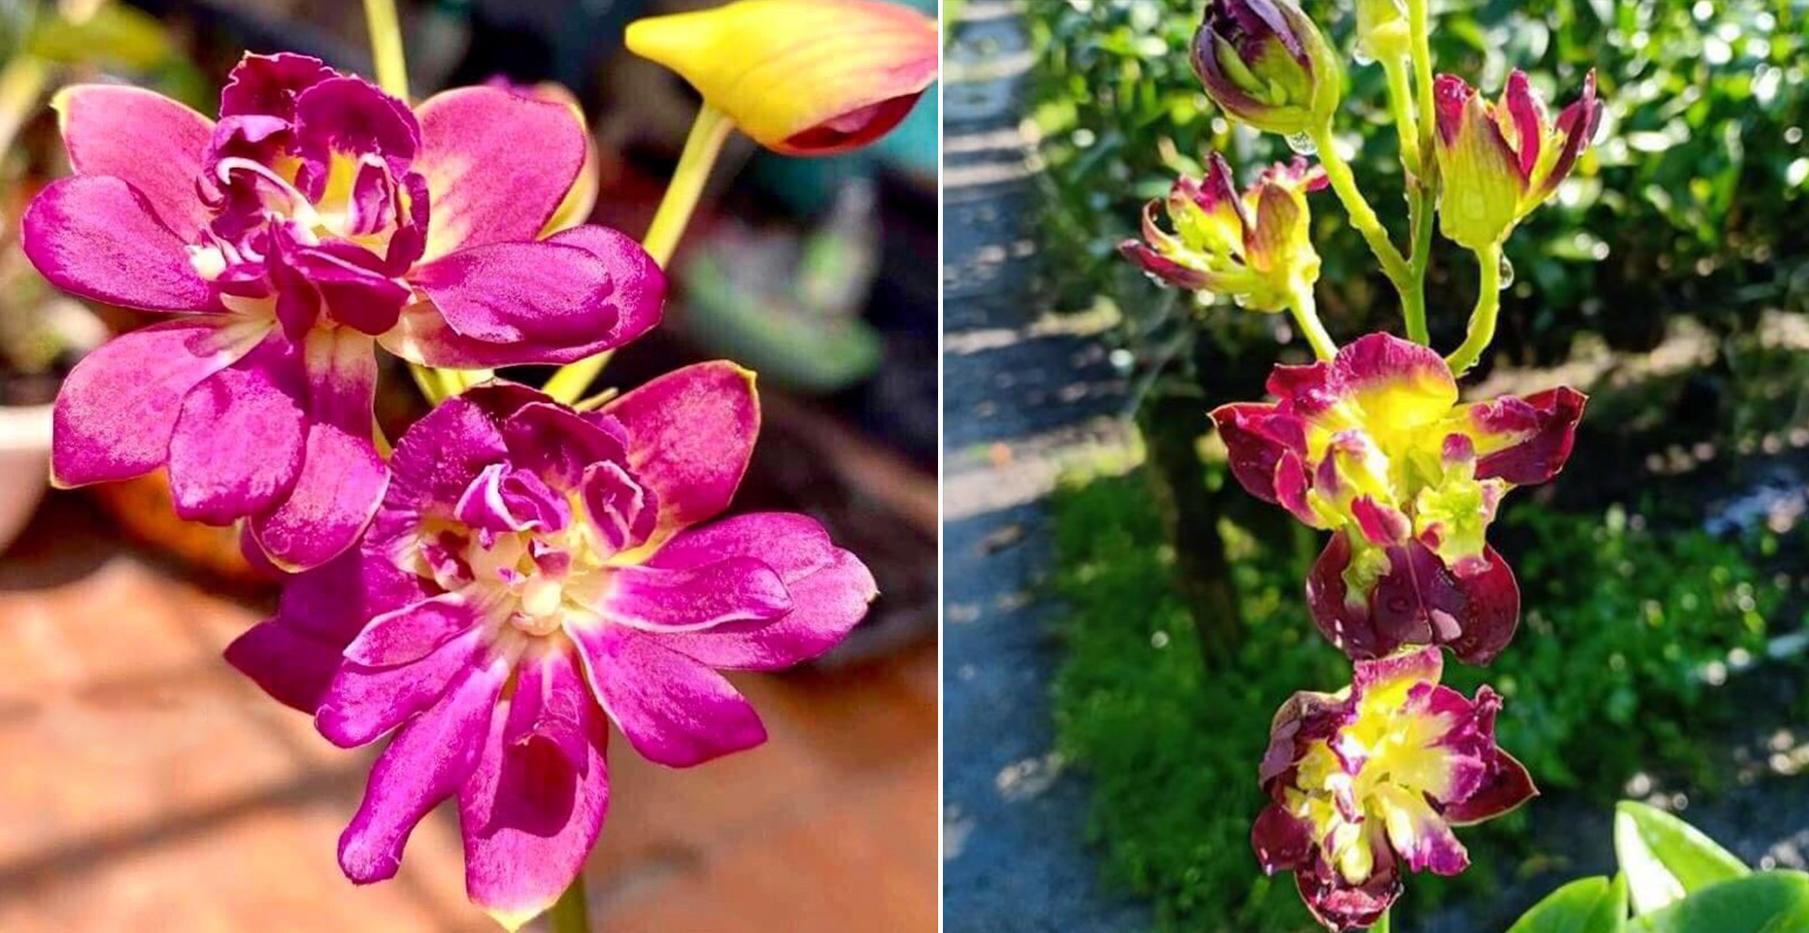 Lan dendro - Phân loại, cách trồng và chăm sóc cho hoa quanh năm - 23